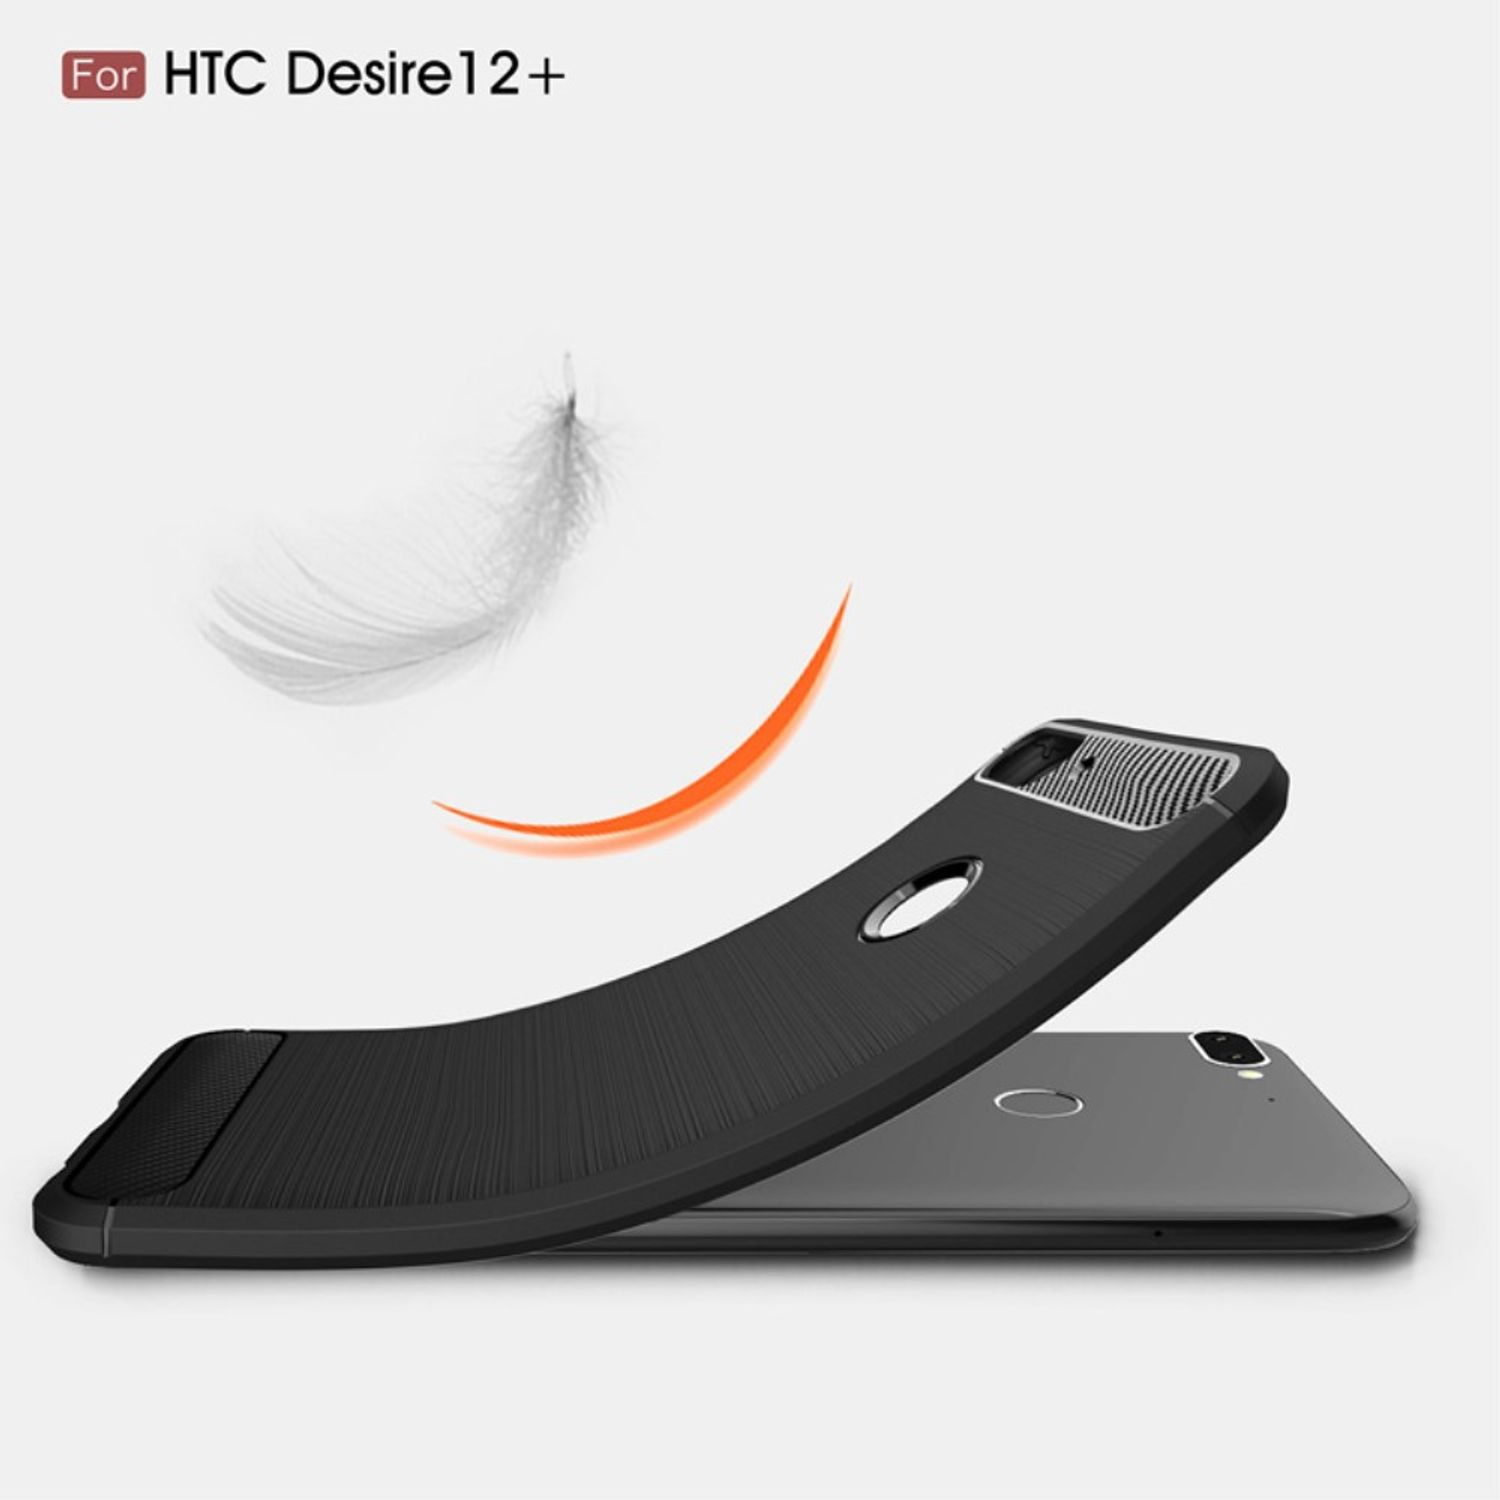 Carbon DESIGN Plus, Optik, Desire 12 Handyhülle Grau Backcover, HTC, KÖNIG